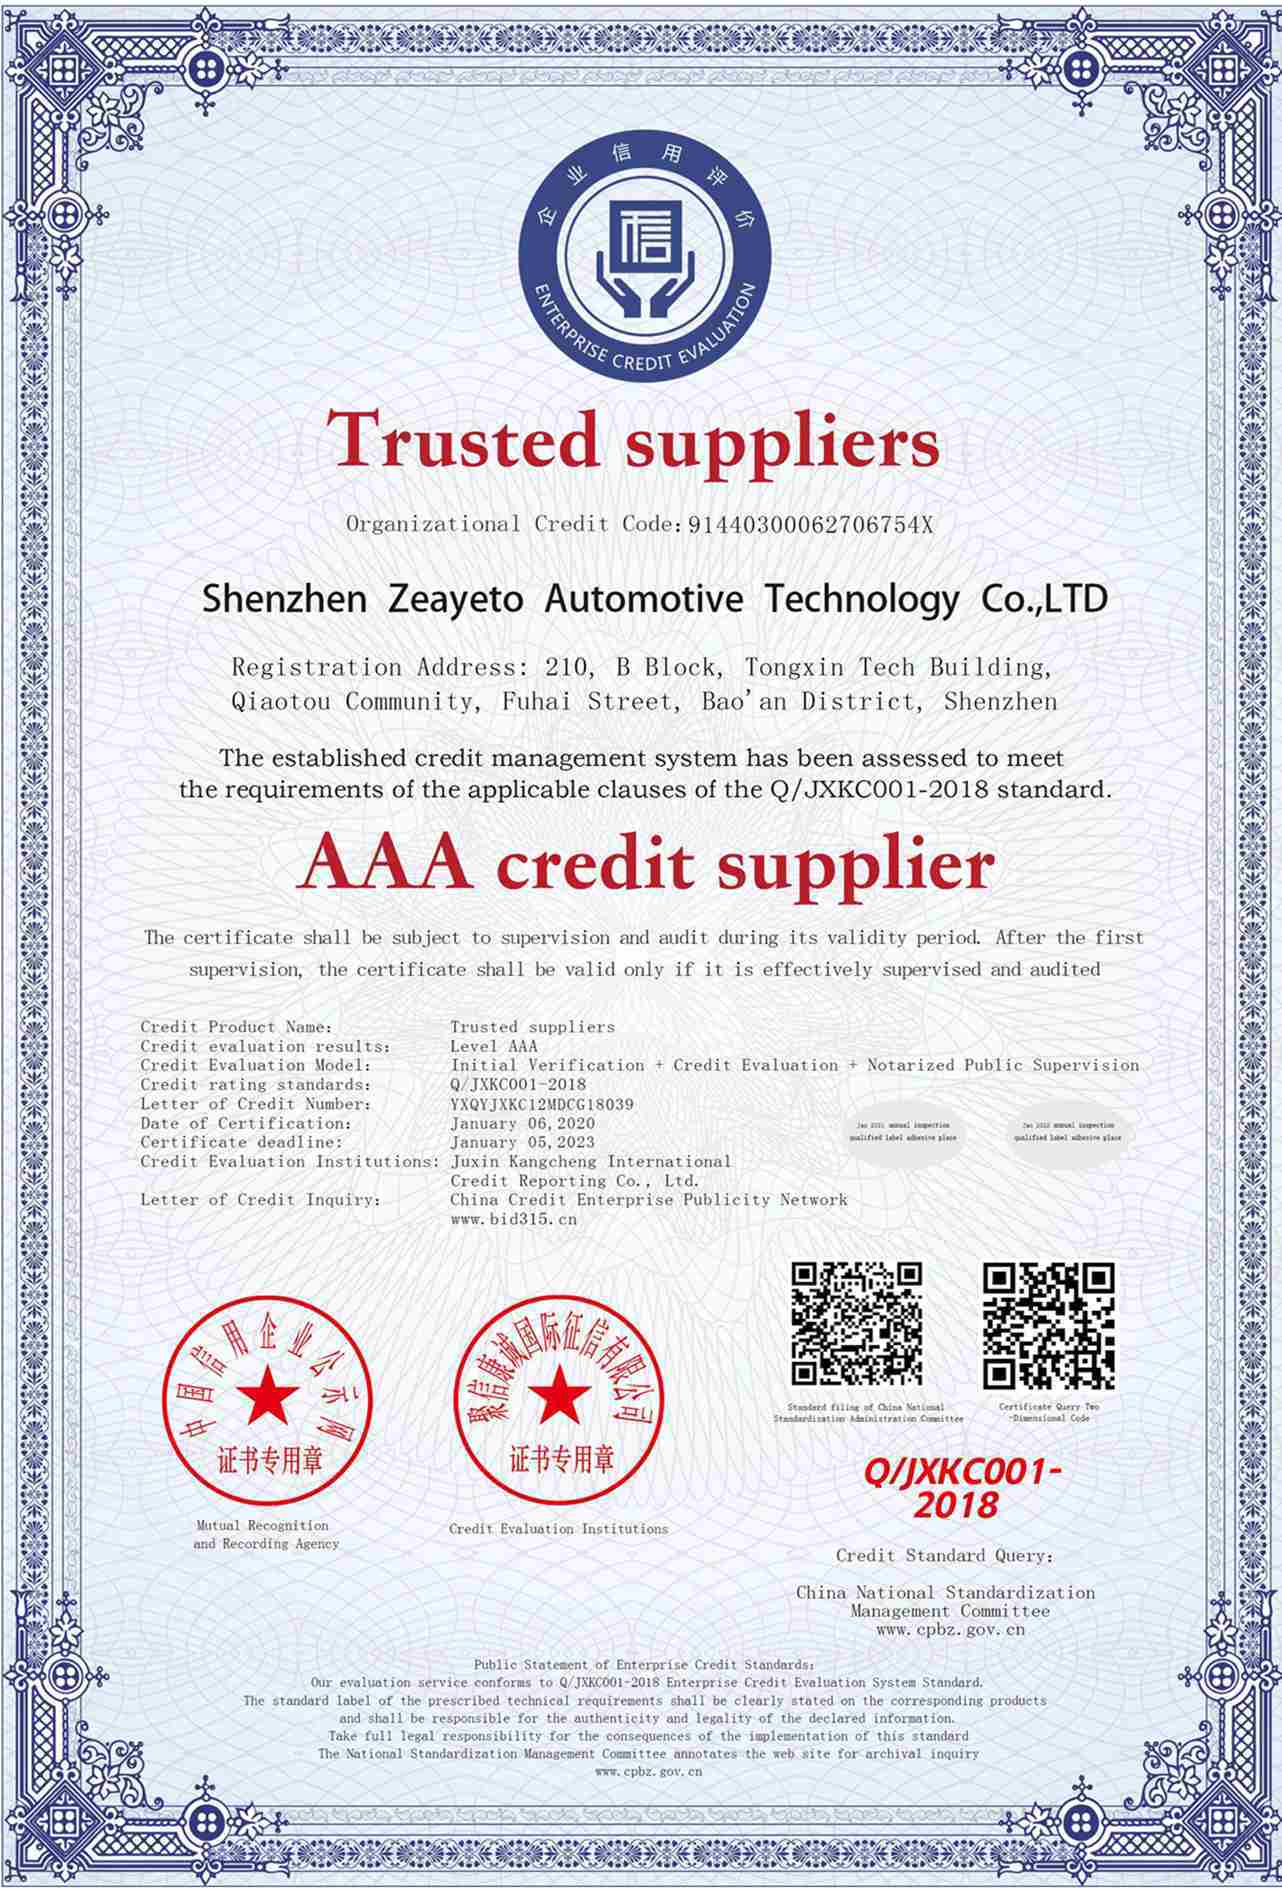 AAA Credit Supplier